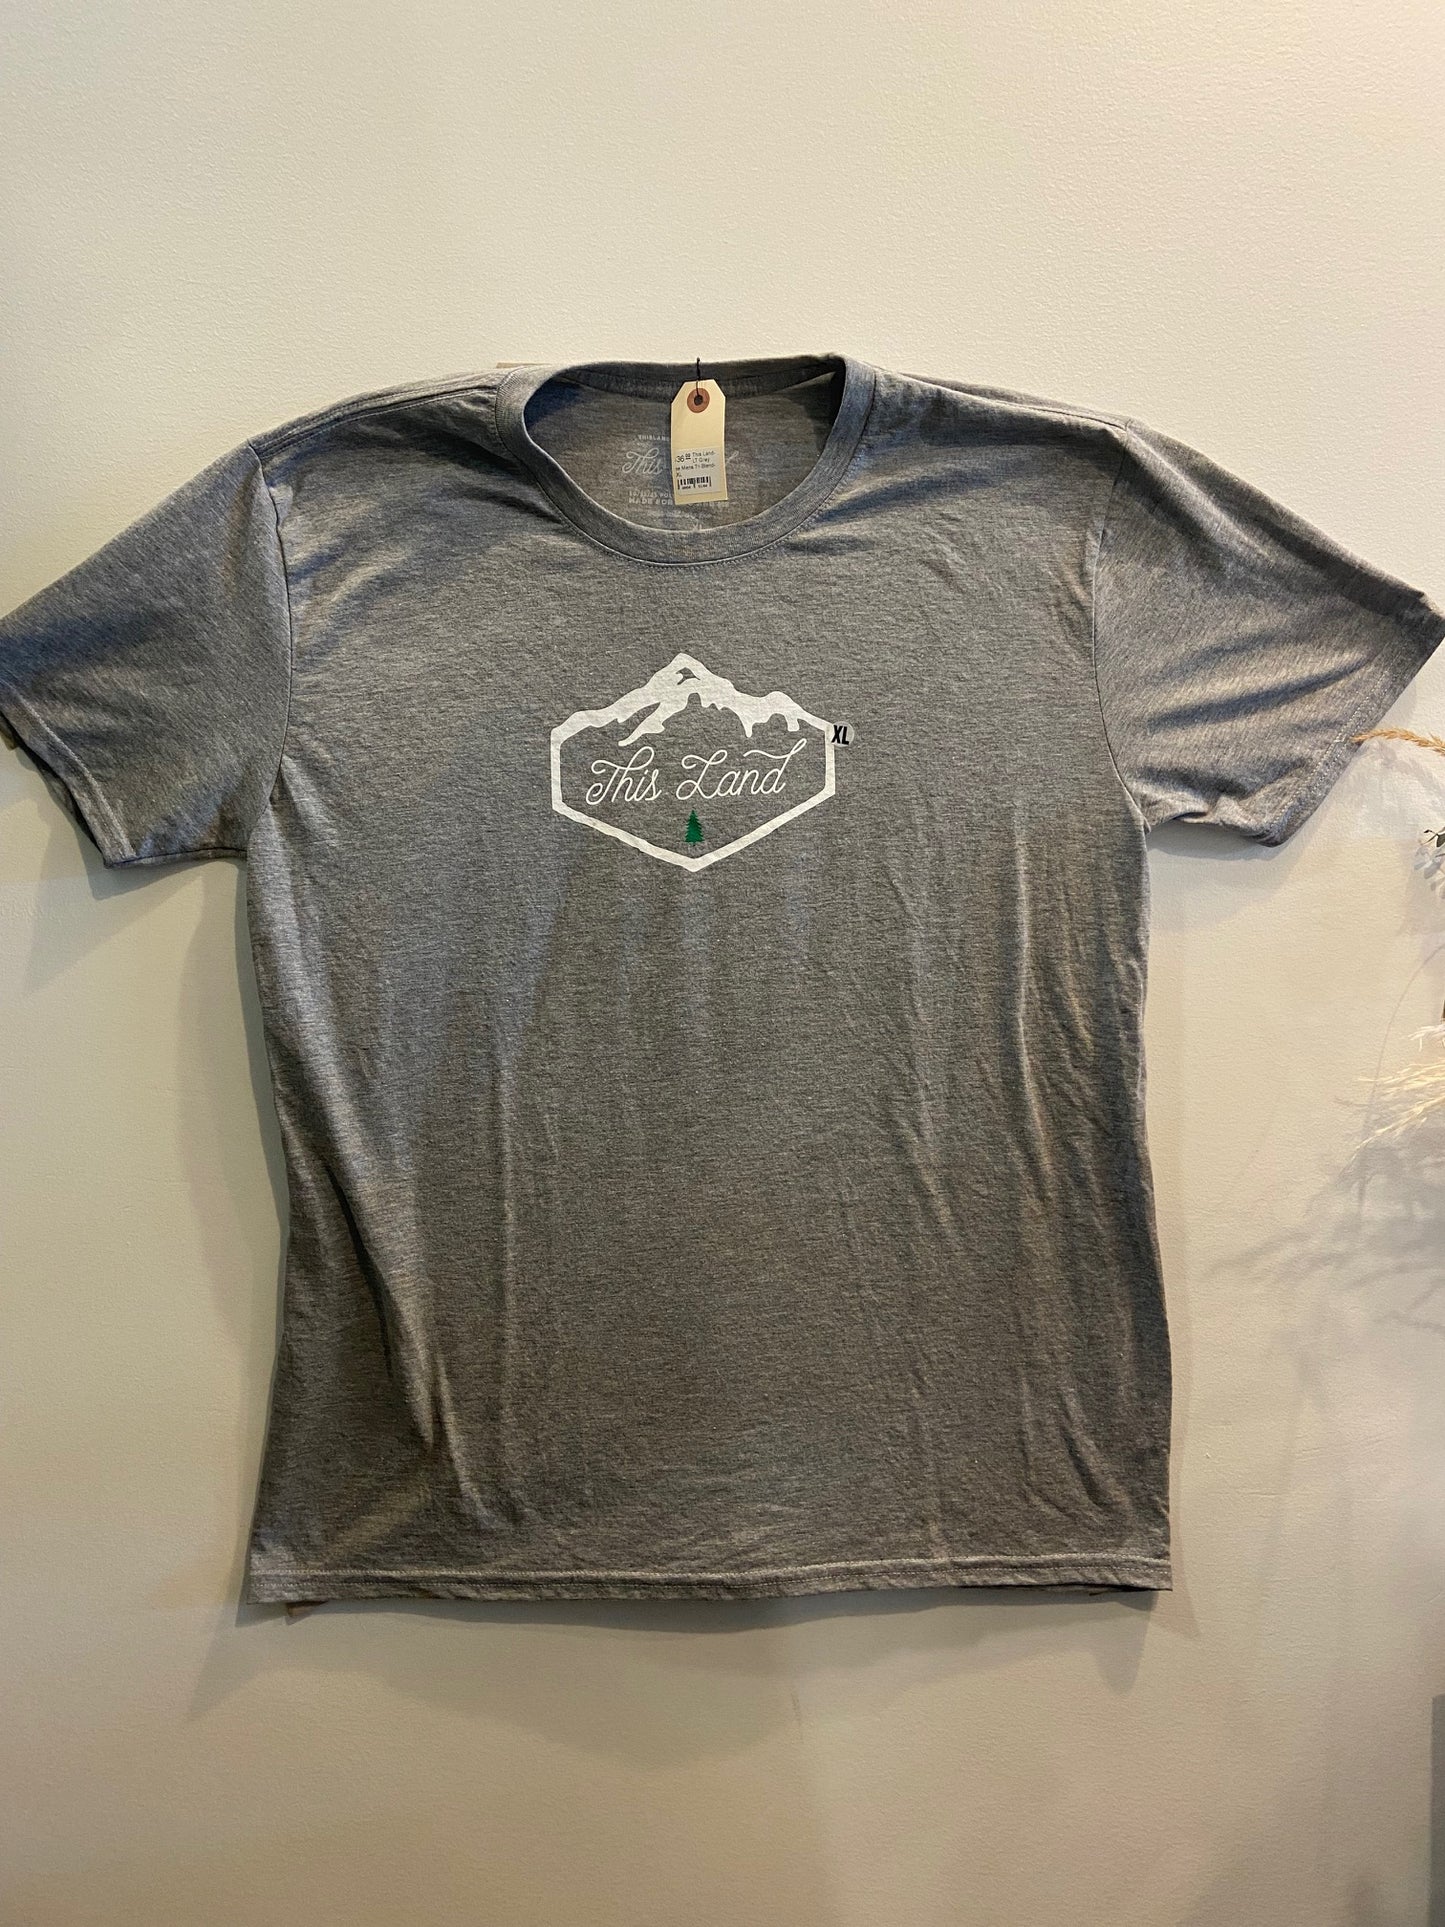 This Land - Men's T-Shirt